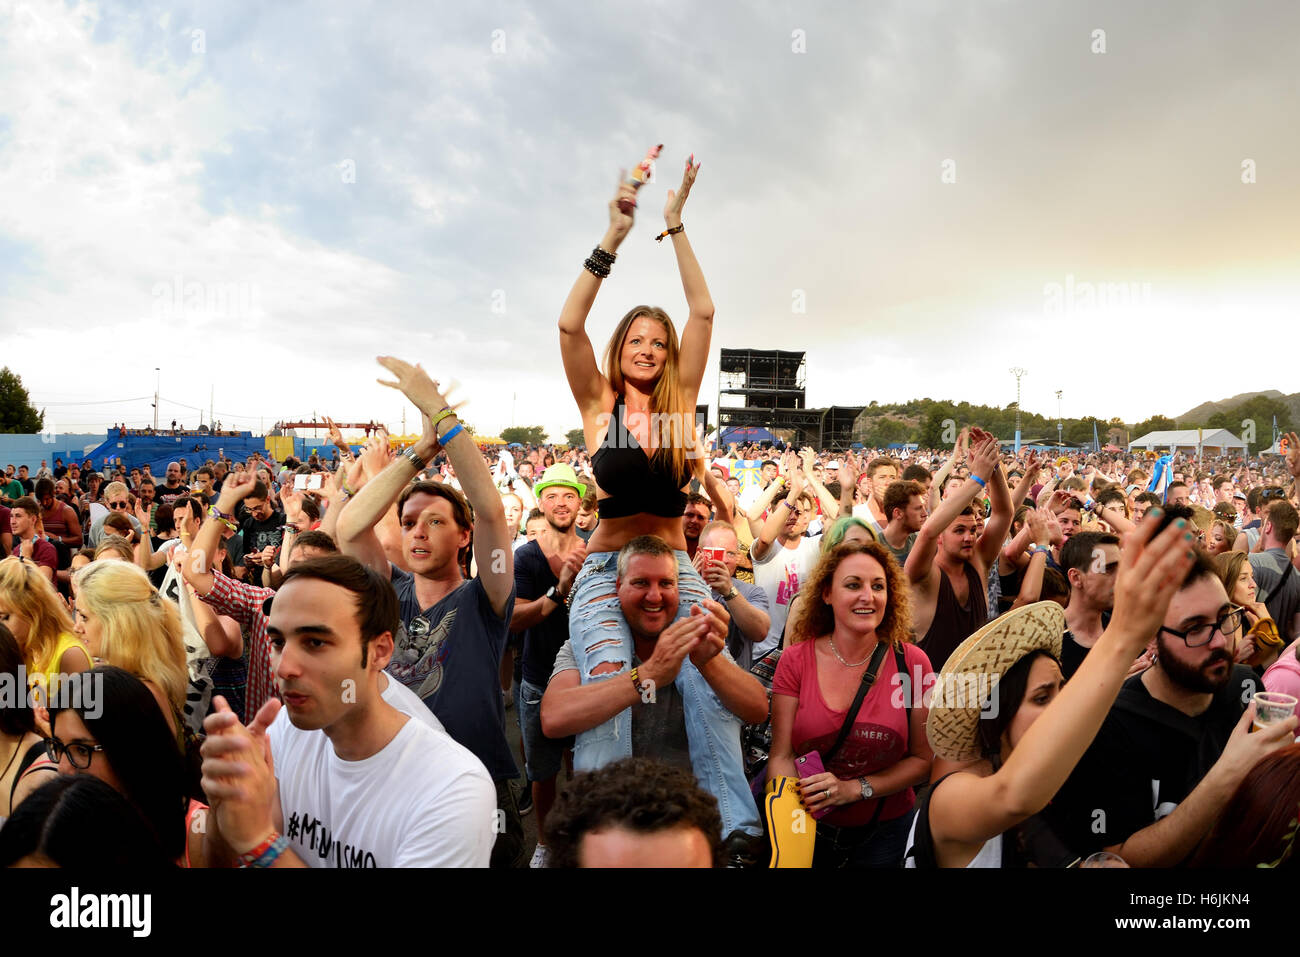 BENICASSIM, Spanien - 19 JUL: Menge in einem Konzert am FIB Festival am 19. Juli 2015 in Benicassim, Spanien. Stockfoto